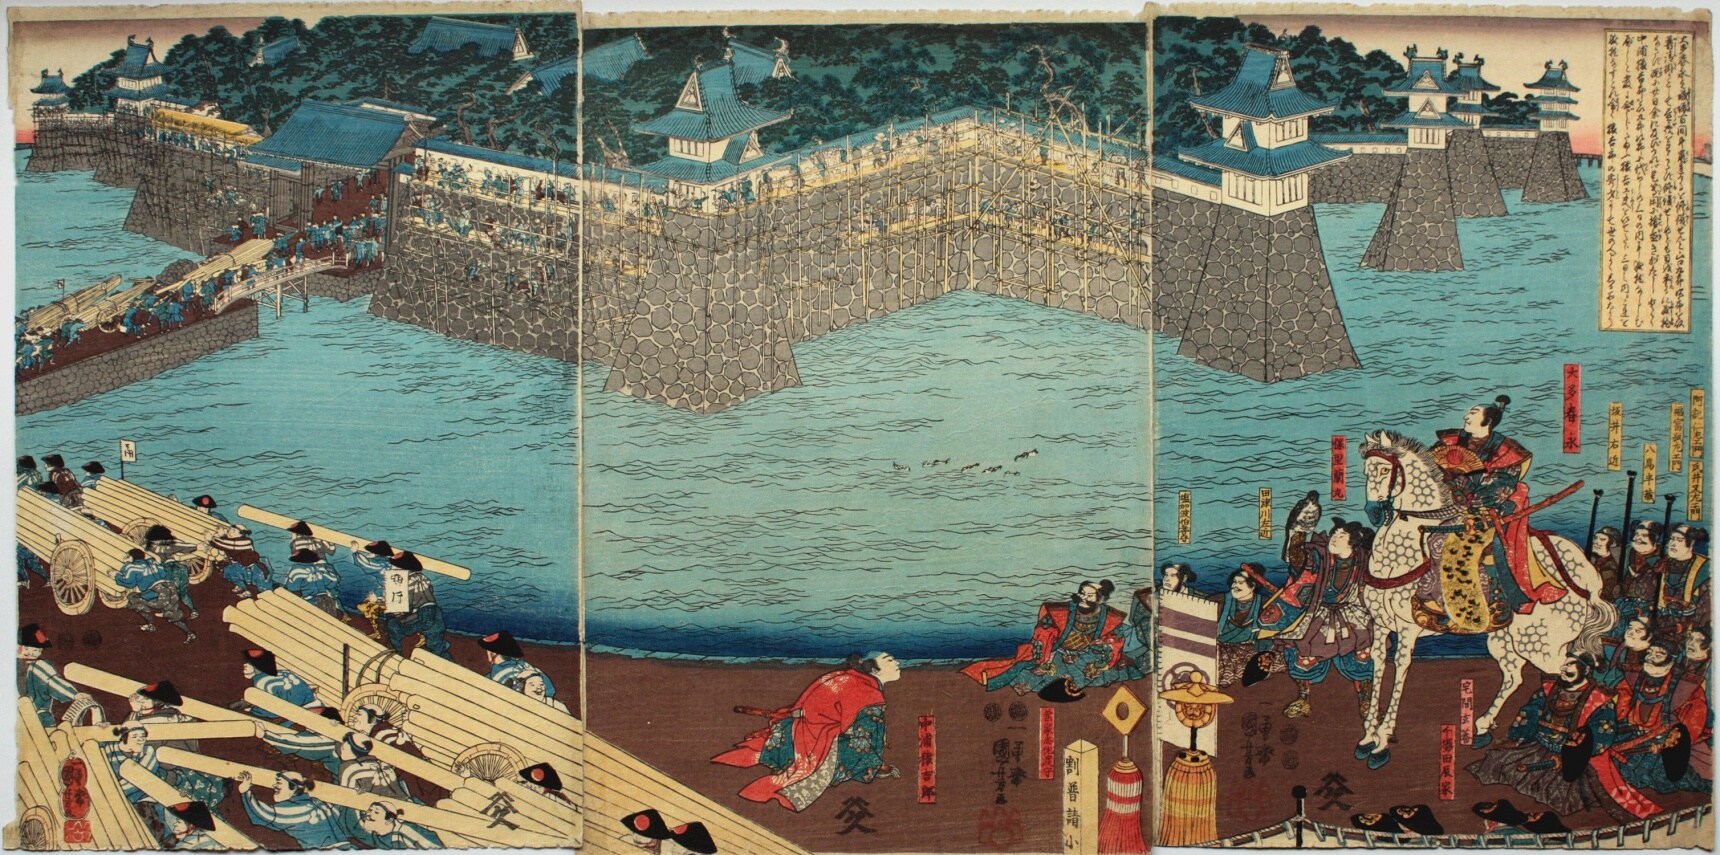 ภาพปราสาทสไตล์ Ukiyo-e ที่งดงามน่าชมทั้ง 6 ภาพ